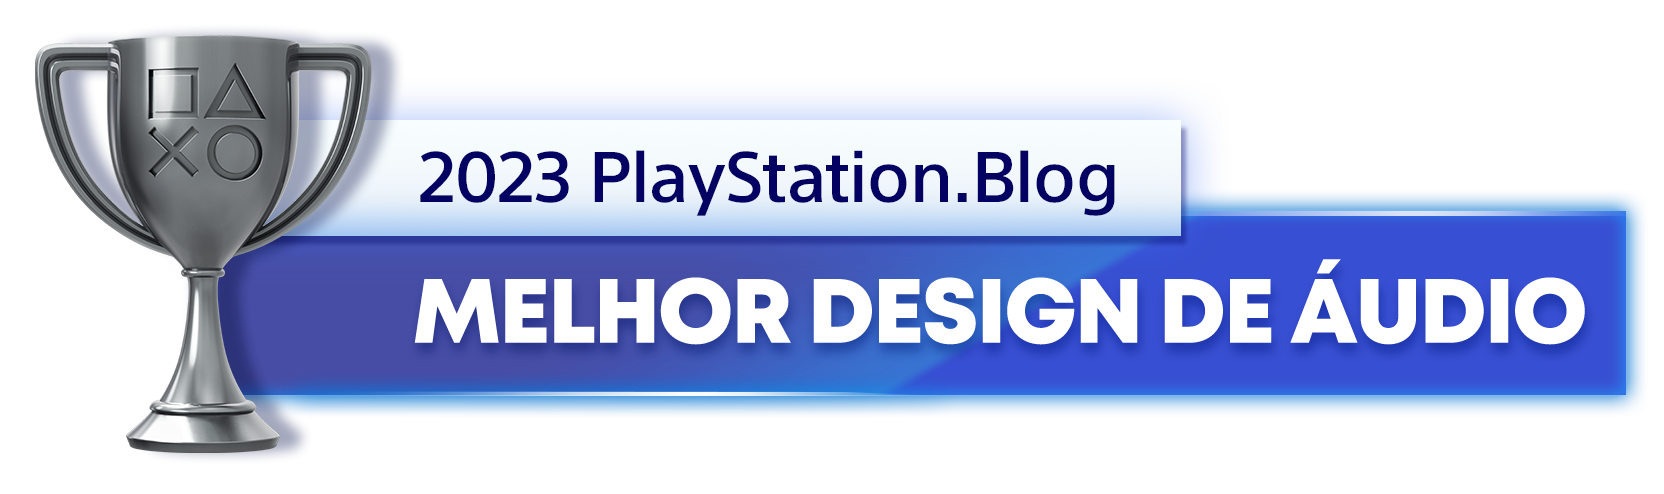  "Troféu de Prata para o vencedor da categoria Melhor Design de Áudio de 2023 do PlayStation Blog "